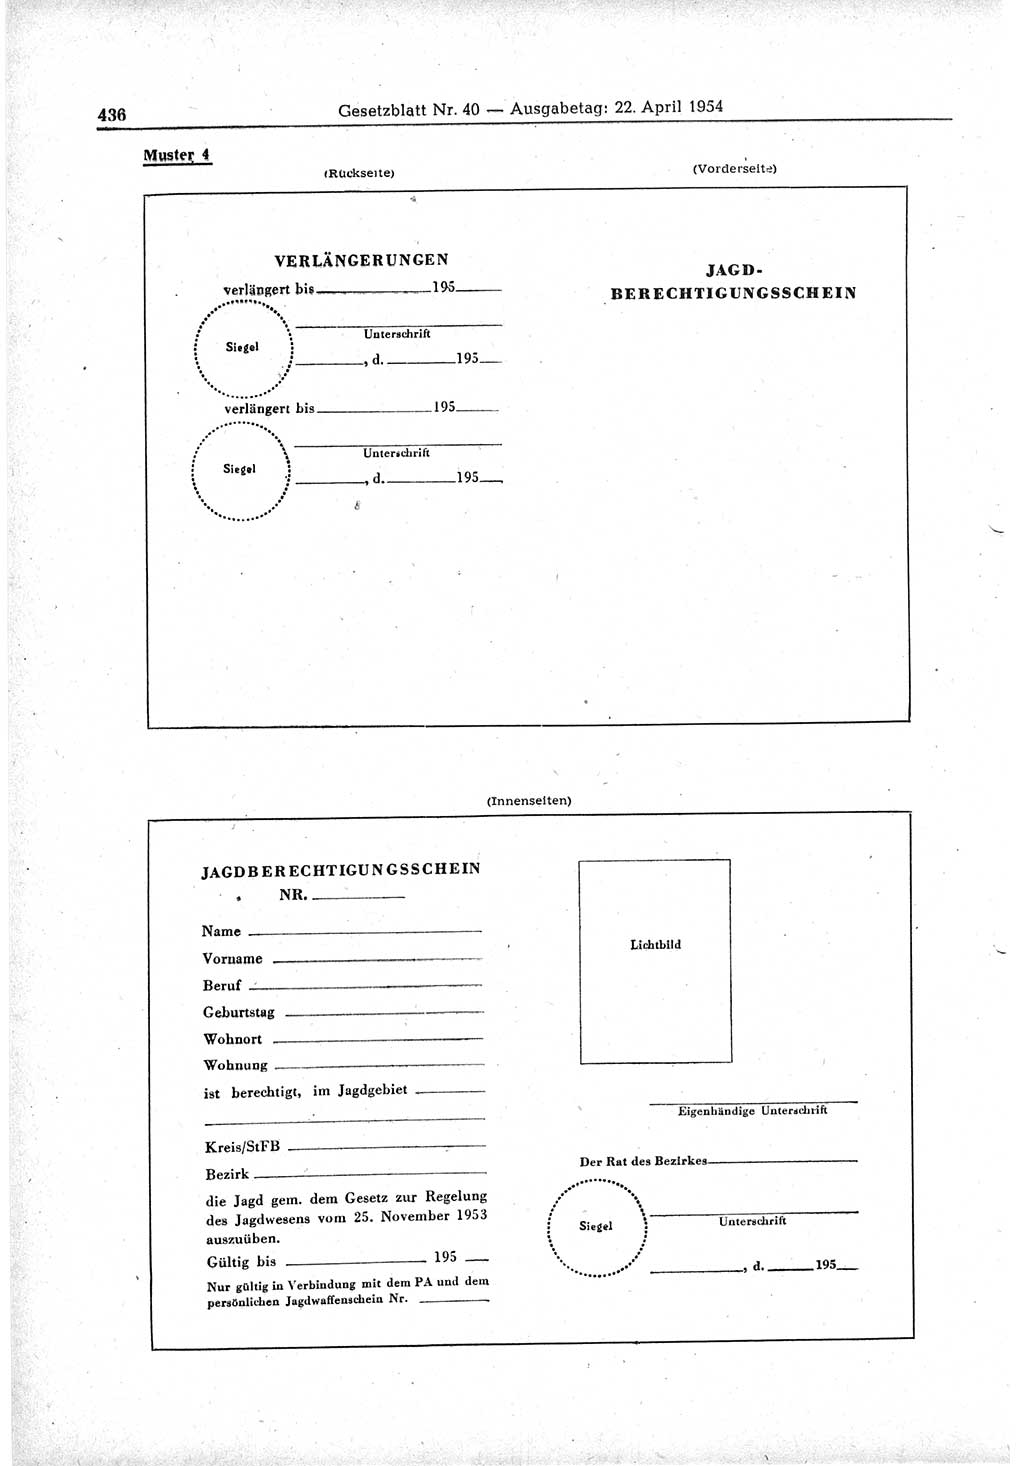 Gesetzblatt (GBl.) der Deutschen Demokratischen Republik (DDR) 1954, Seite 436 (GBl. DDR 1954, S. 436)